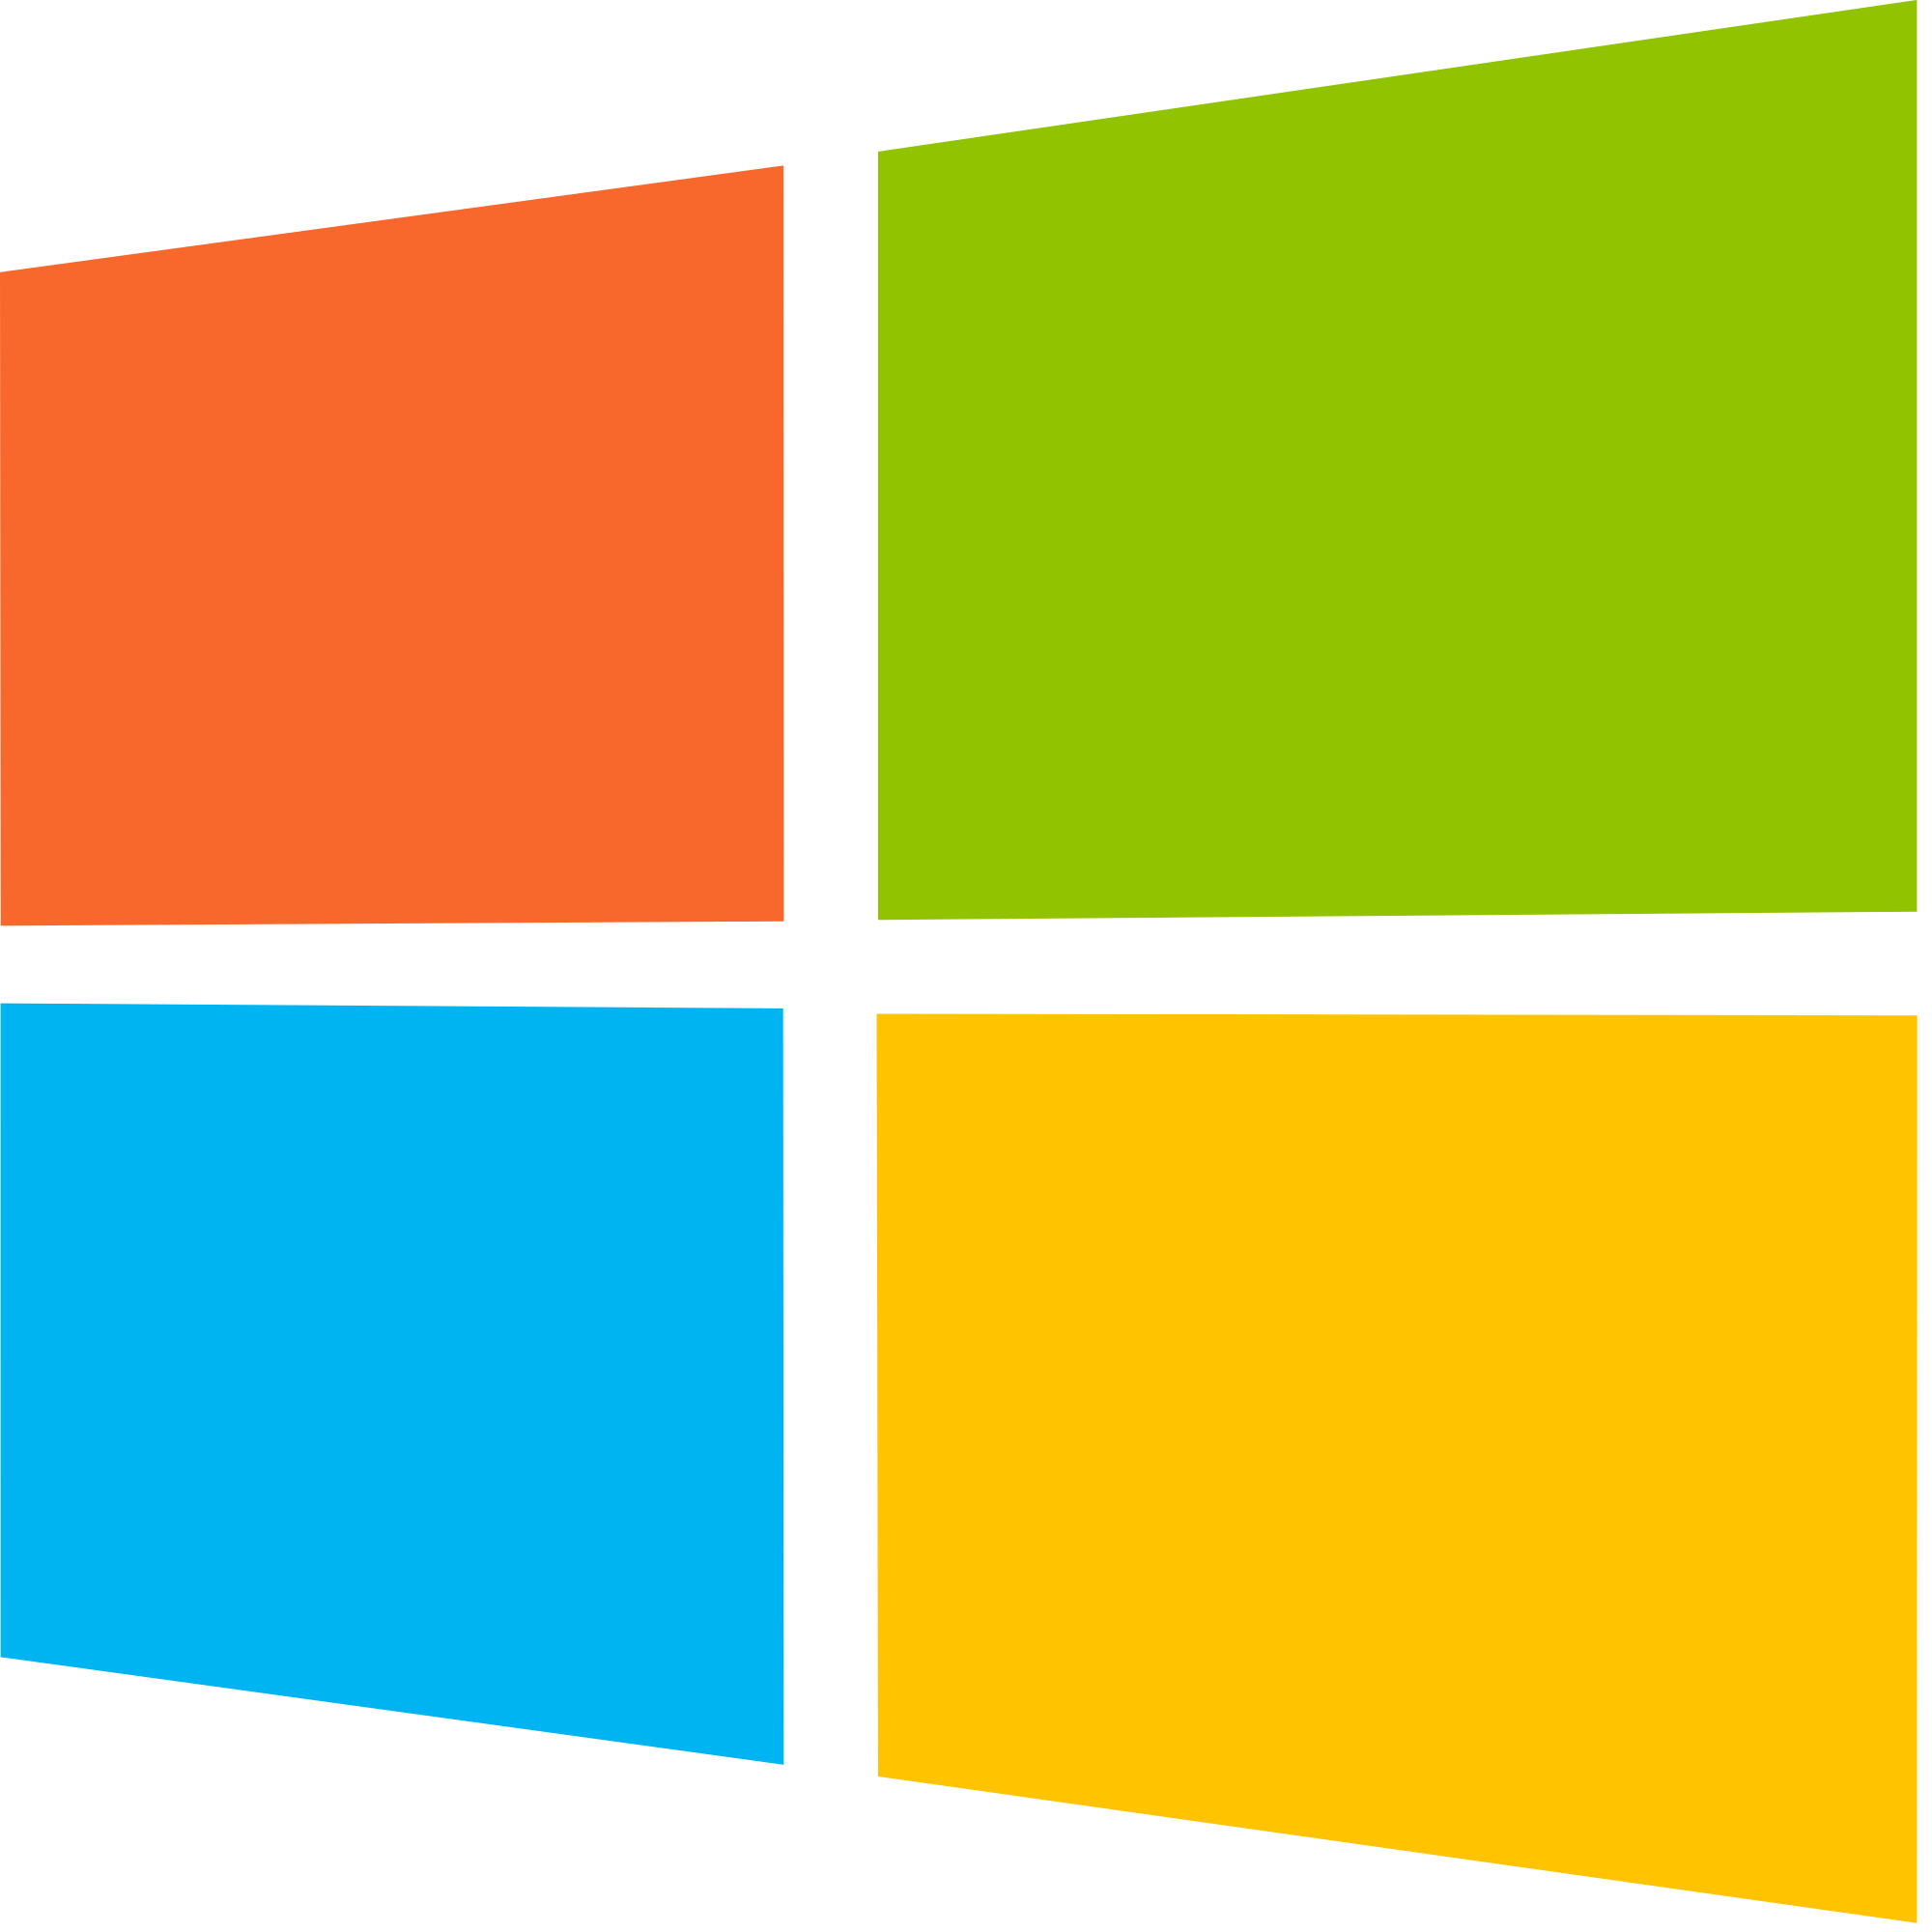 Windows 10 Logo Icon 98054 Free Icons Library